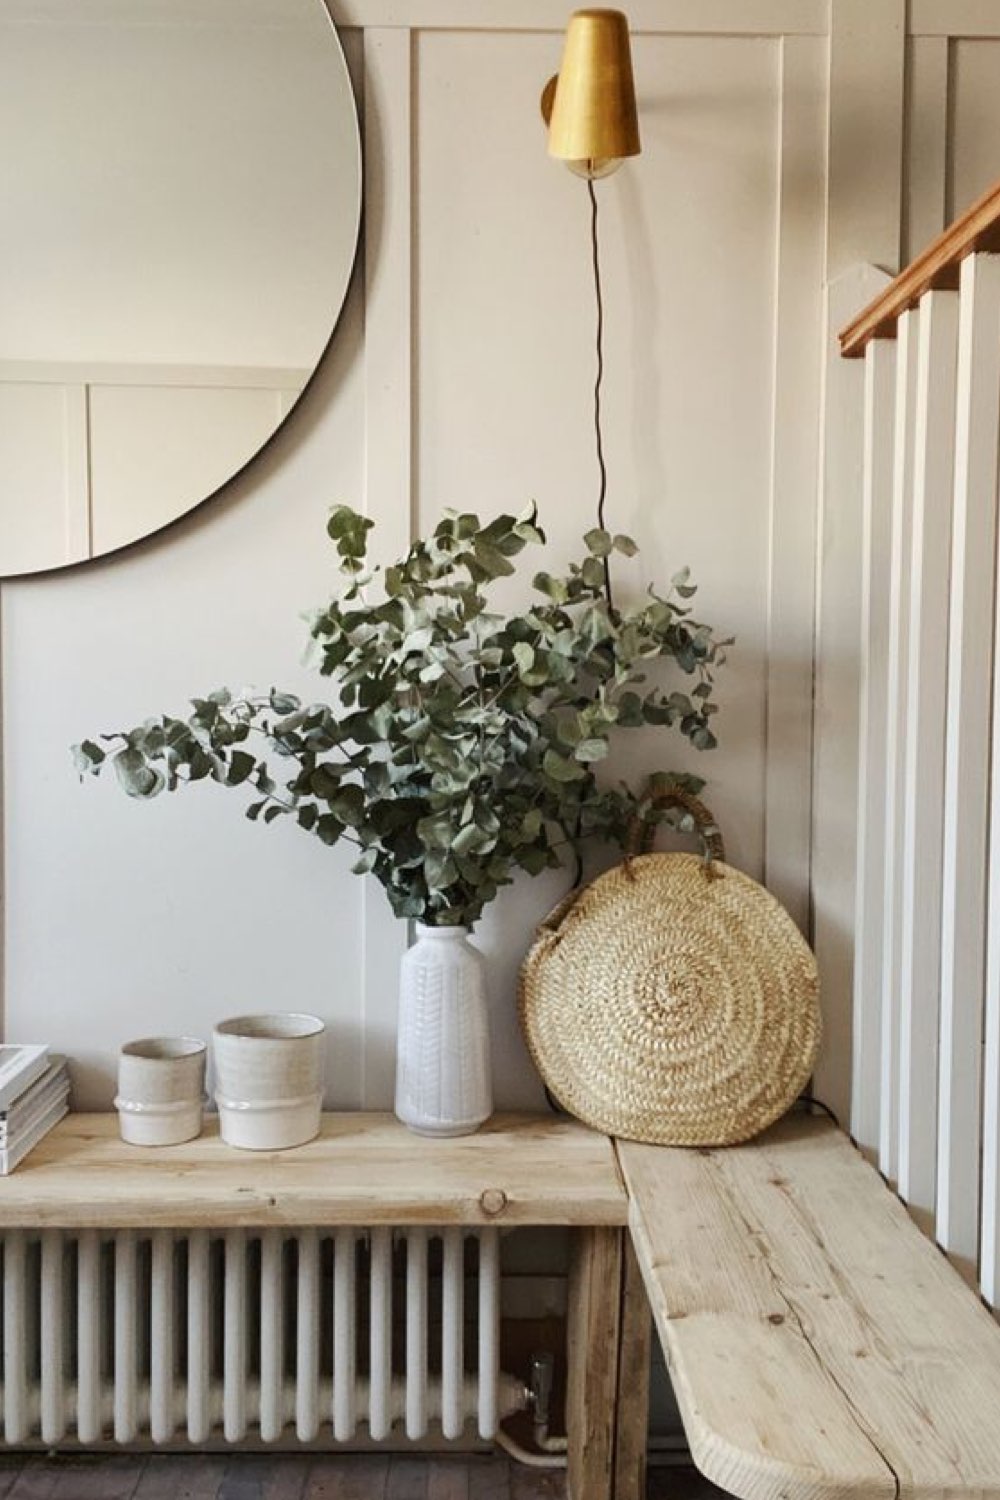 decor slow living 10 signes banc pour cacher radiateur planche en bois miroir rond eucalyptus dans un vase mise en scène déco à copier